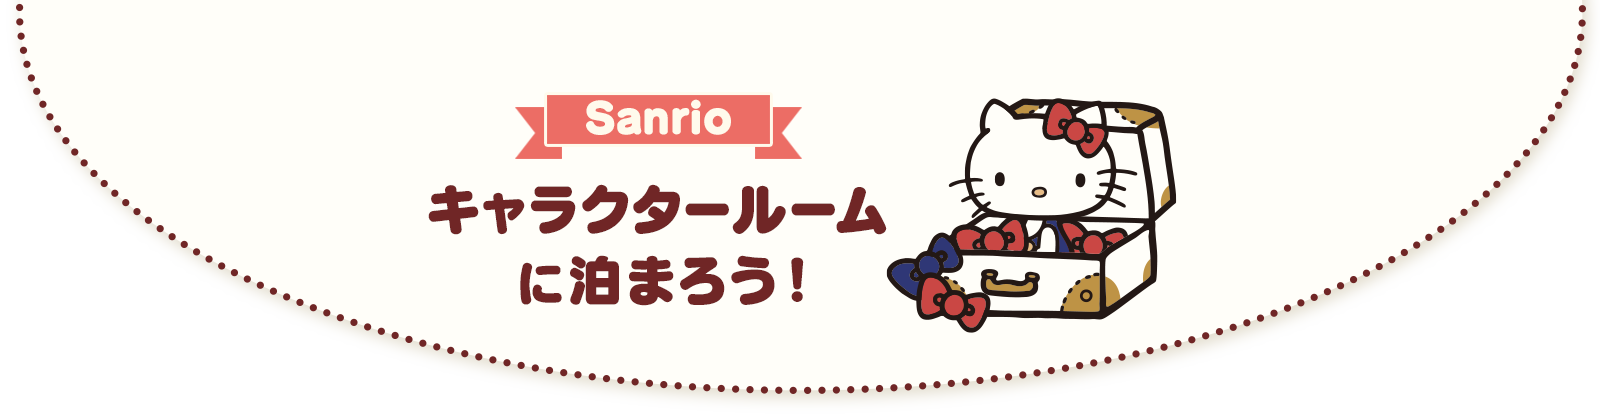 サンリオ キャラクタールーム サンリオ